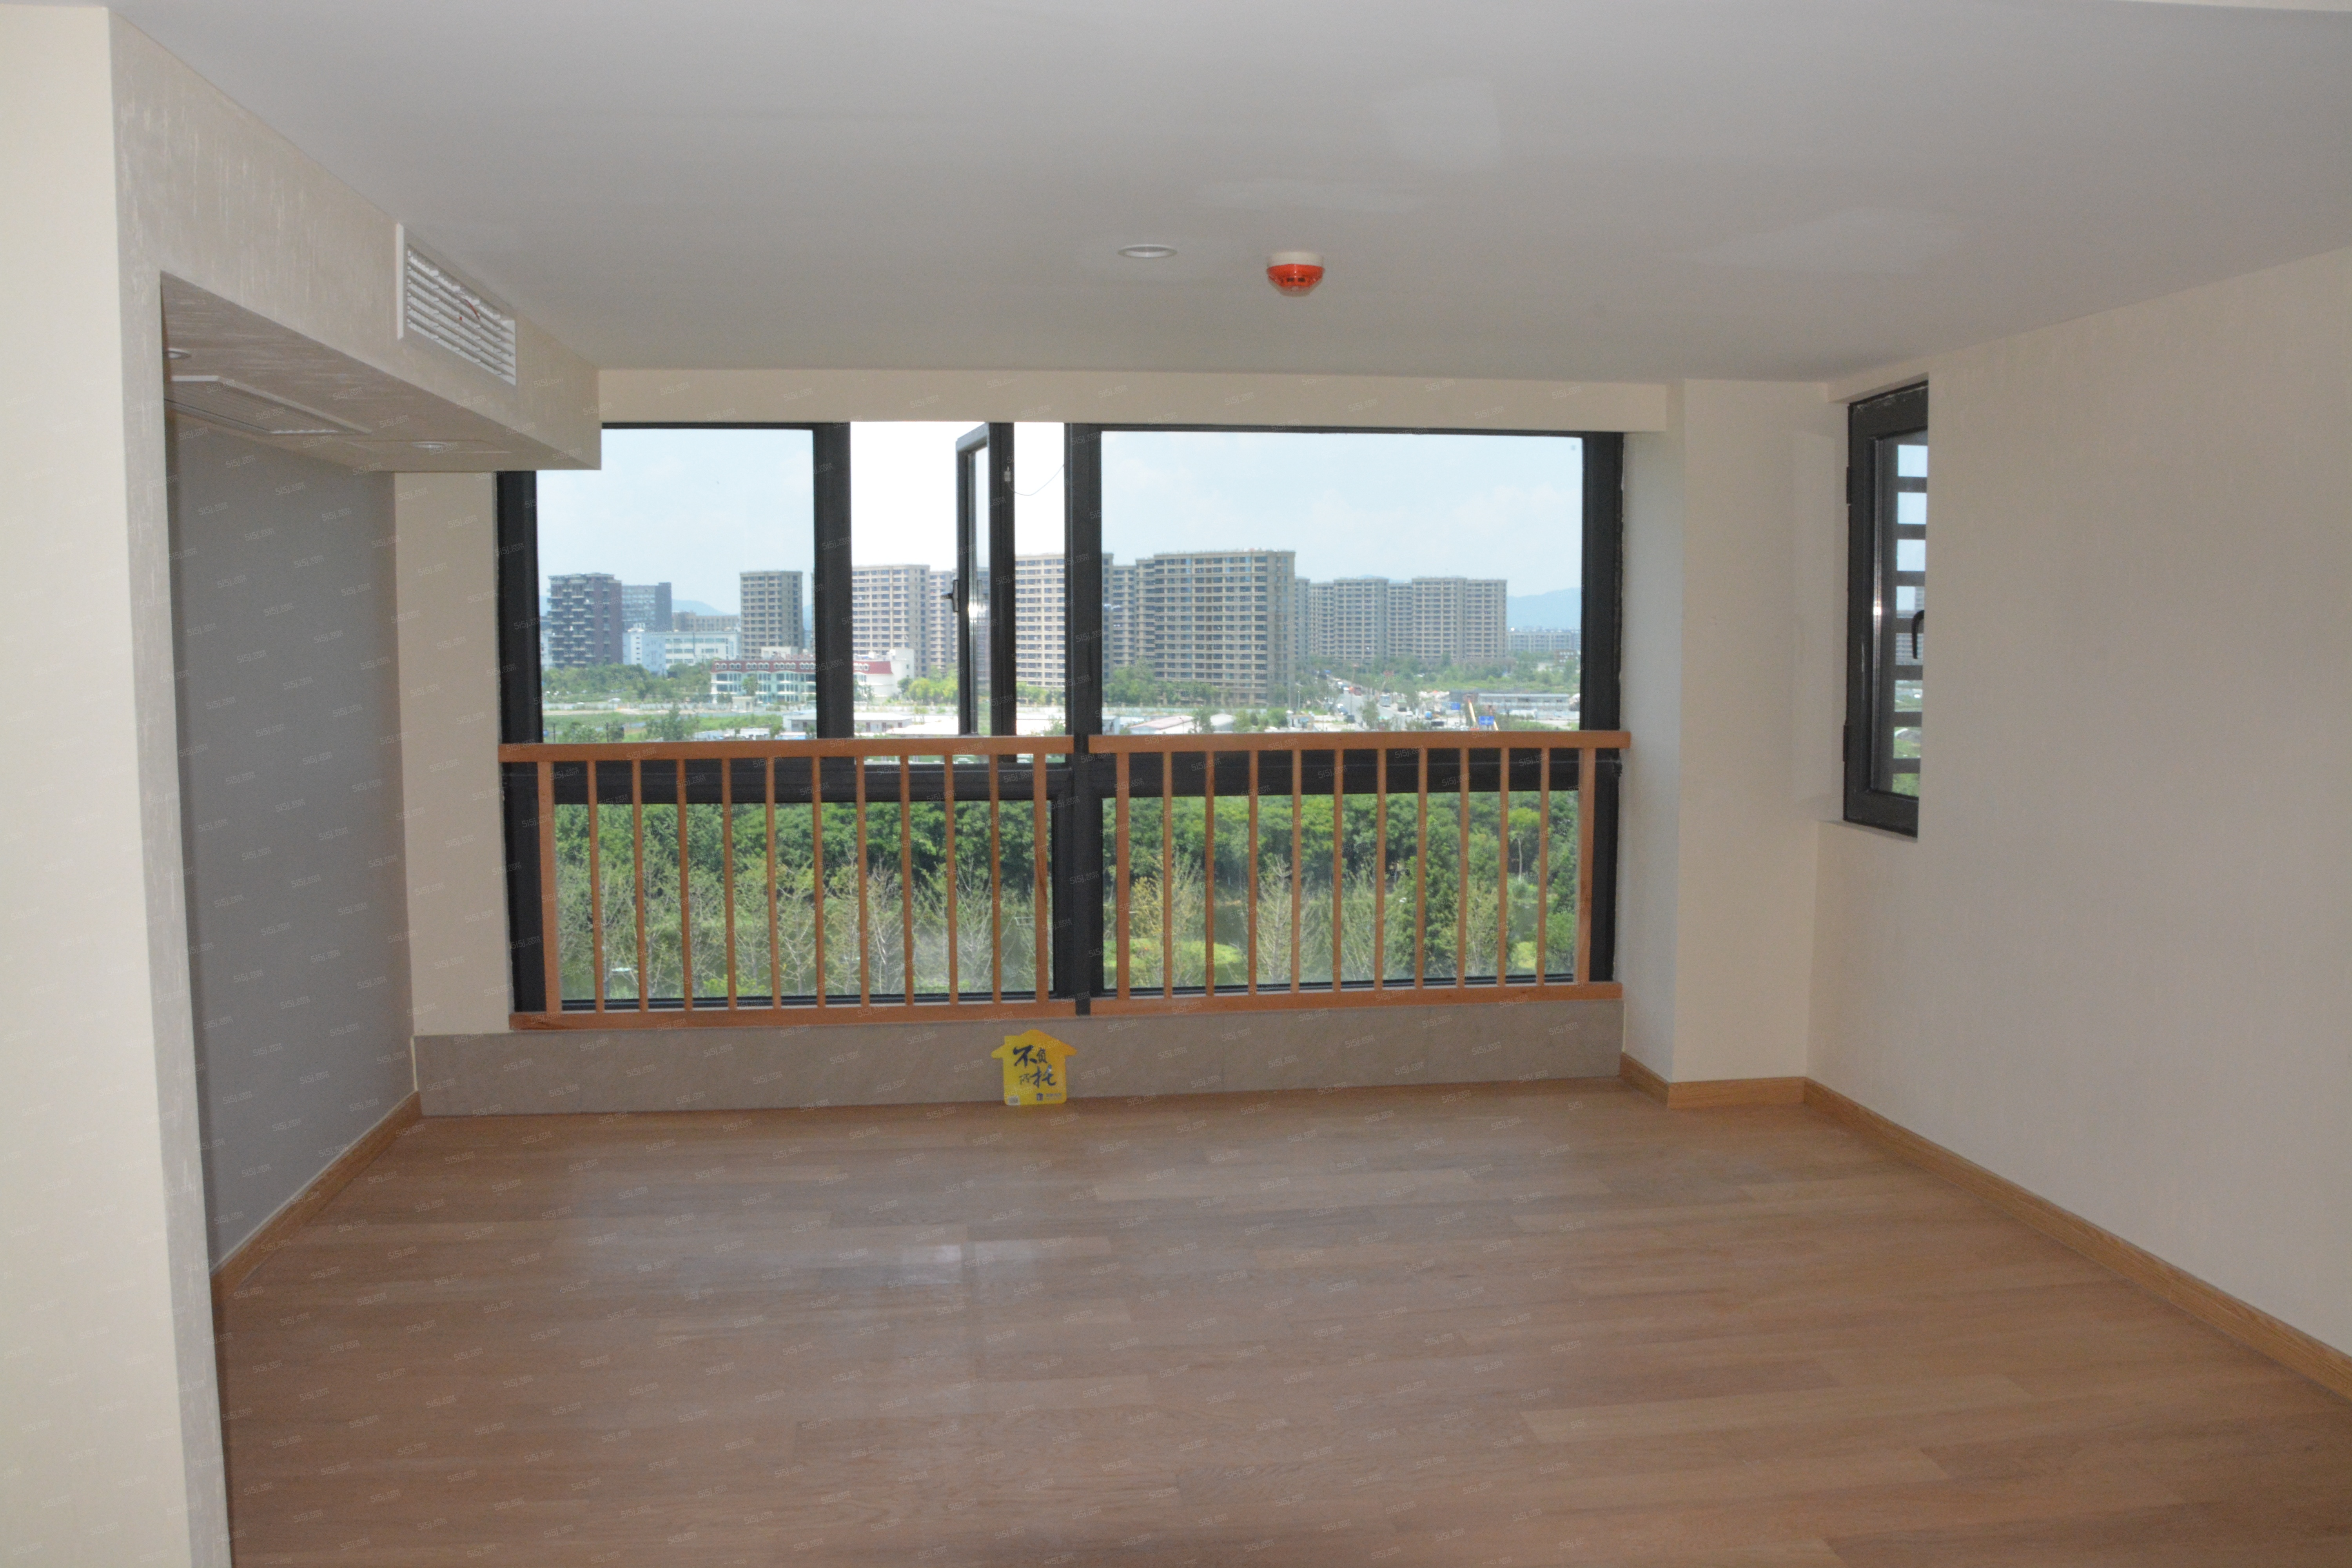 杭海路1528号 网红基地loft公寓 正对丰收湖 景观养眼